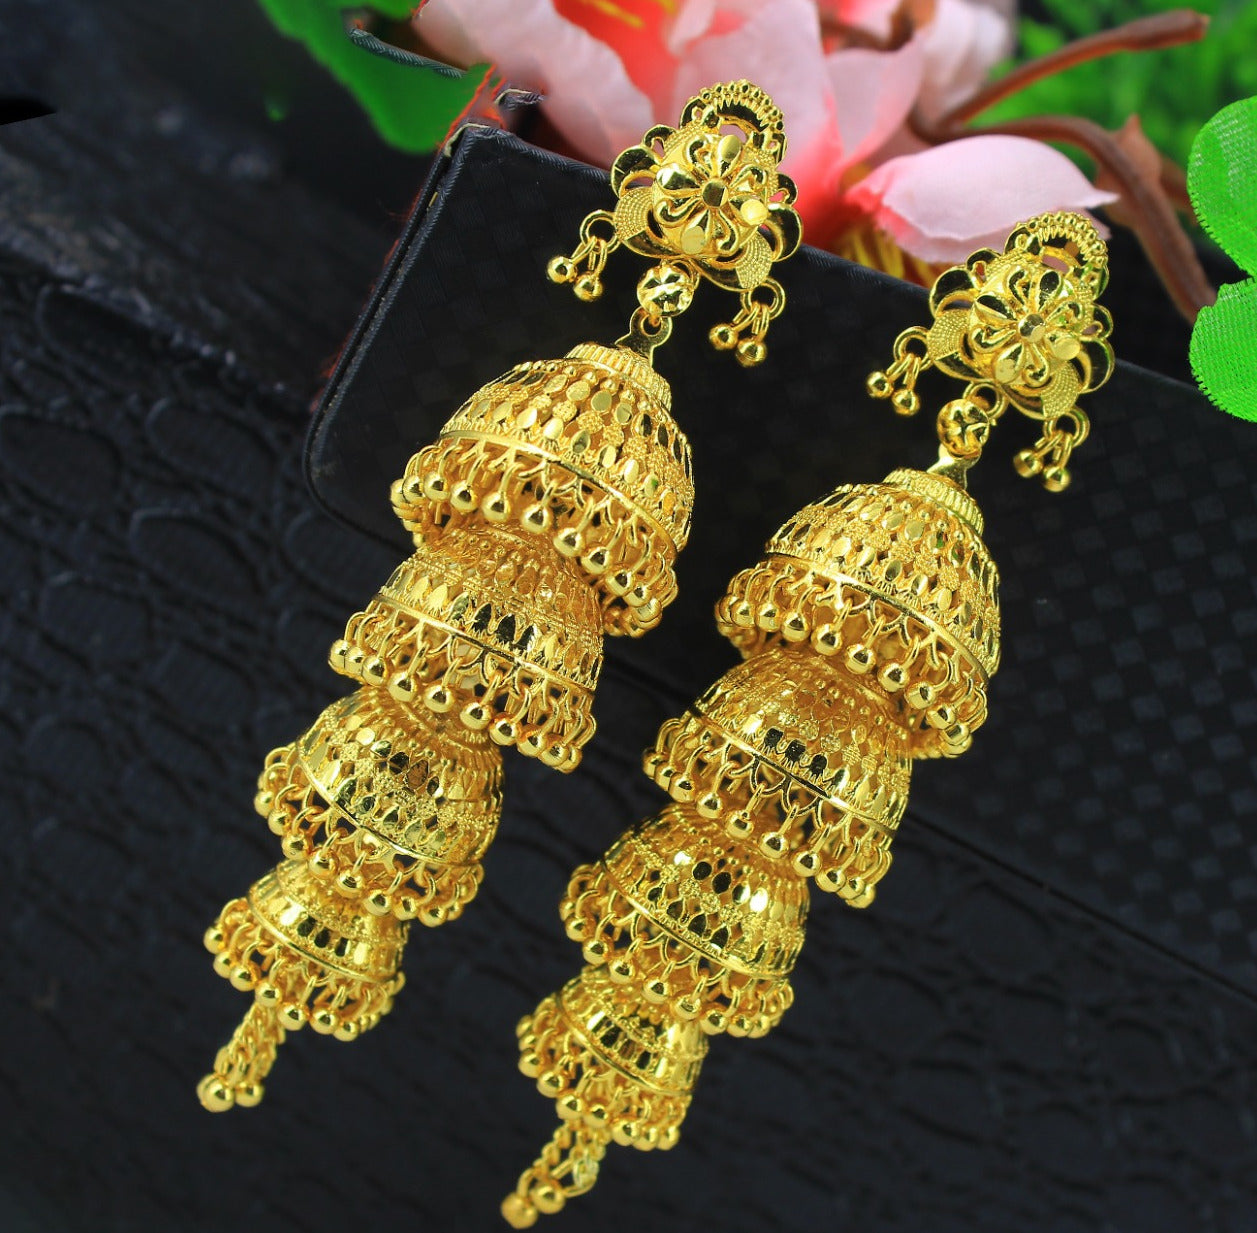 Mekkna Women's Pride Gold Plated Earrings Set | Buy Jewellery Online from Mekkna.